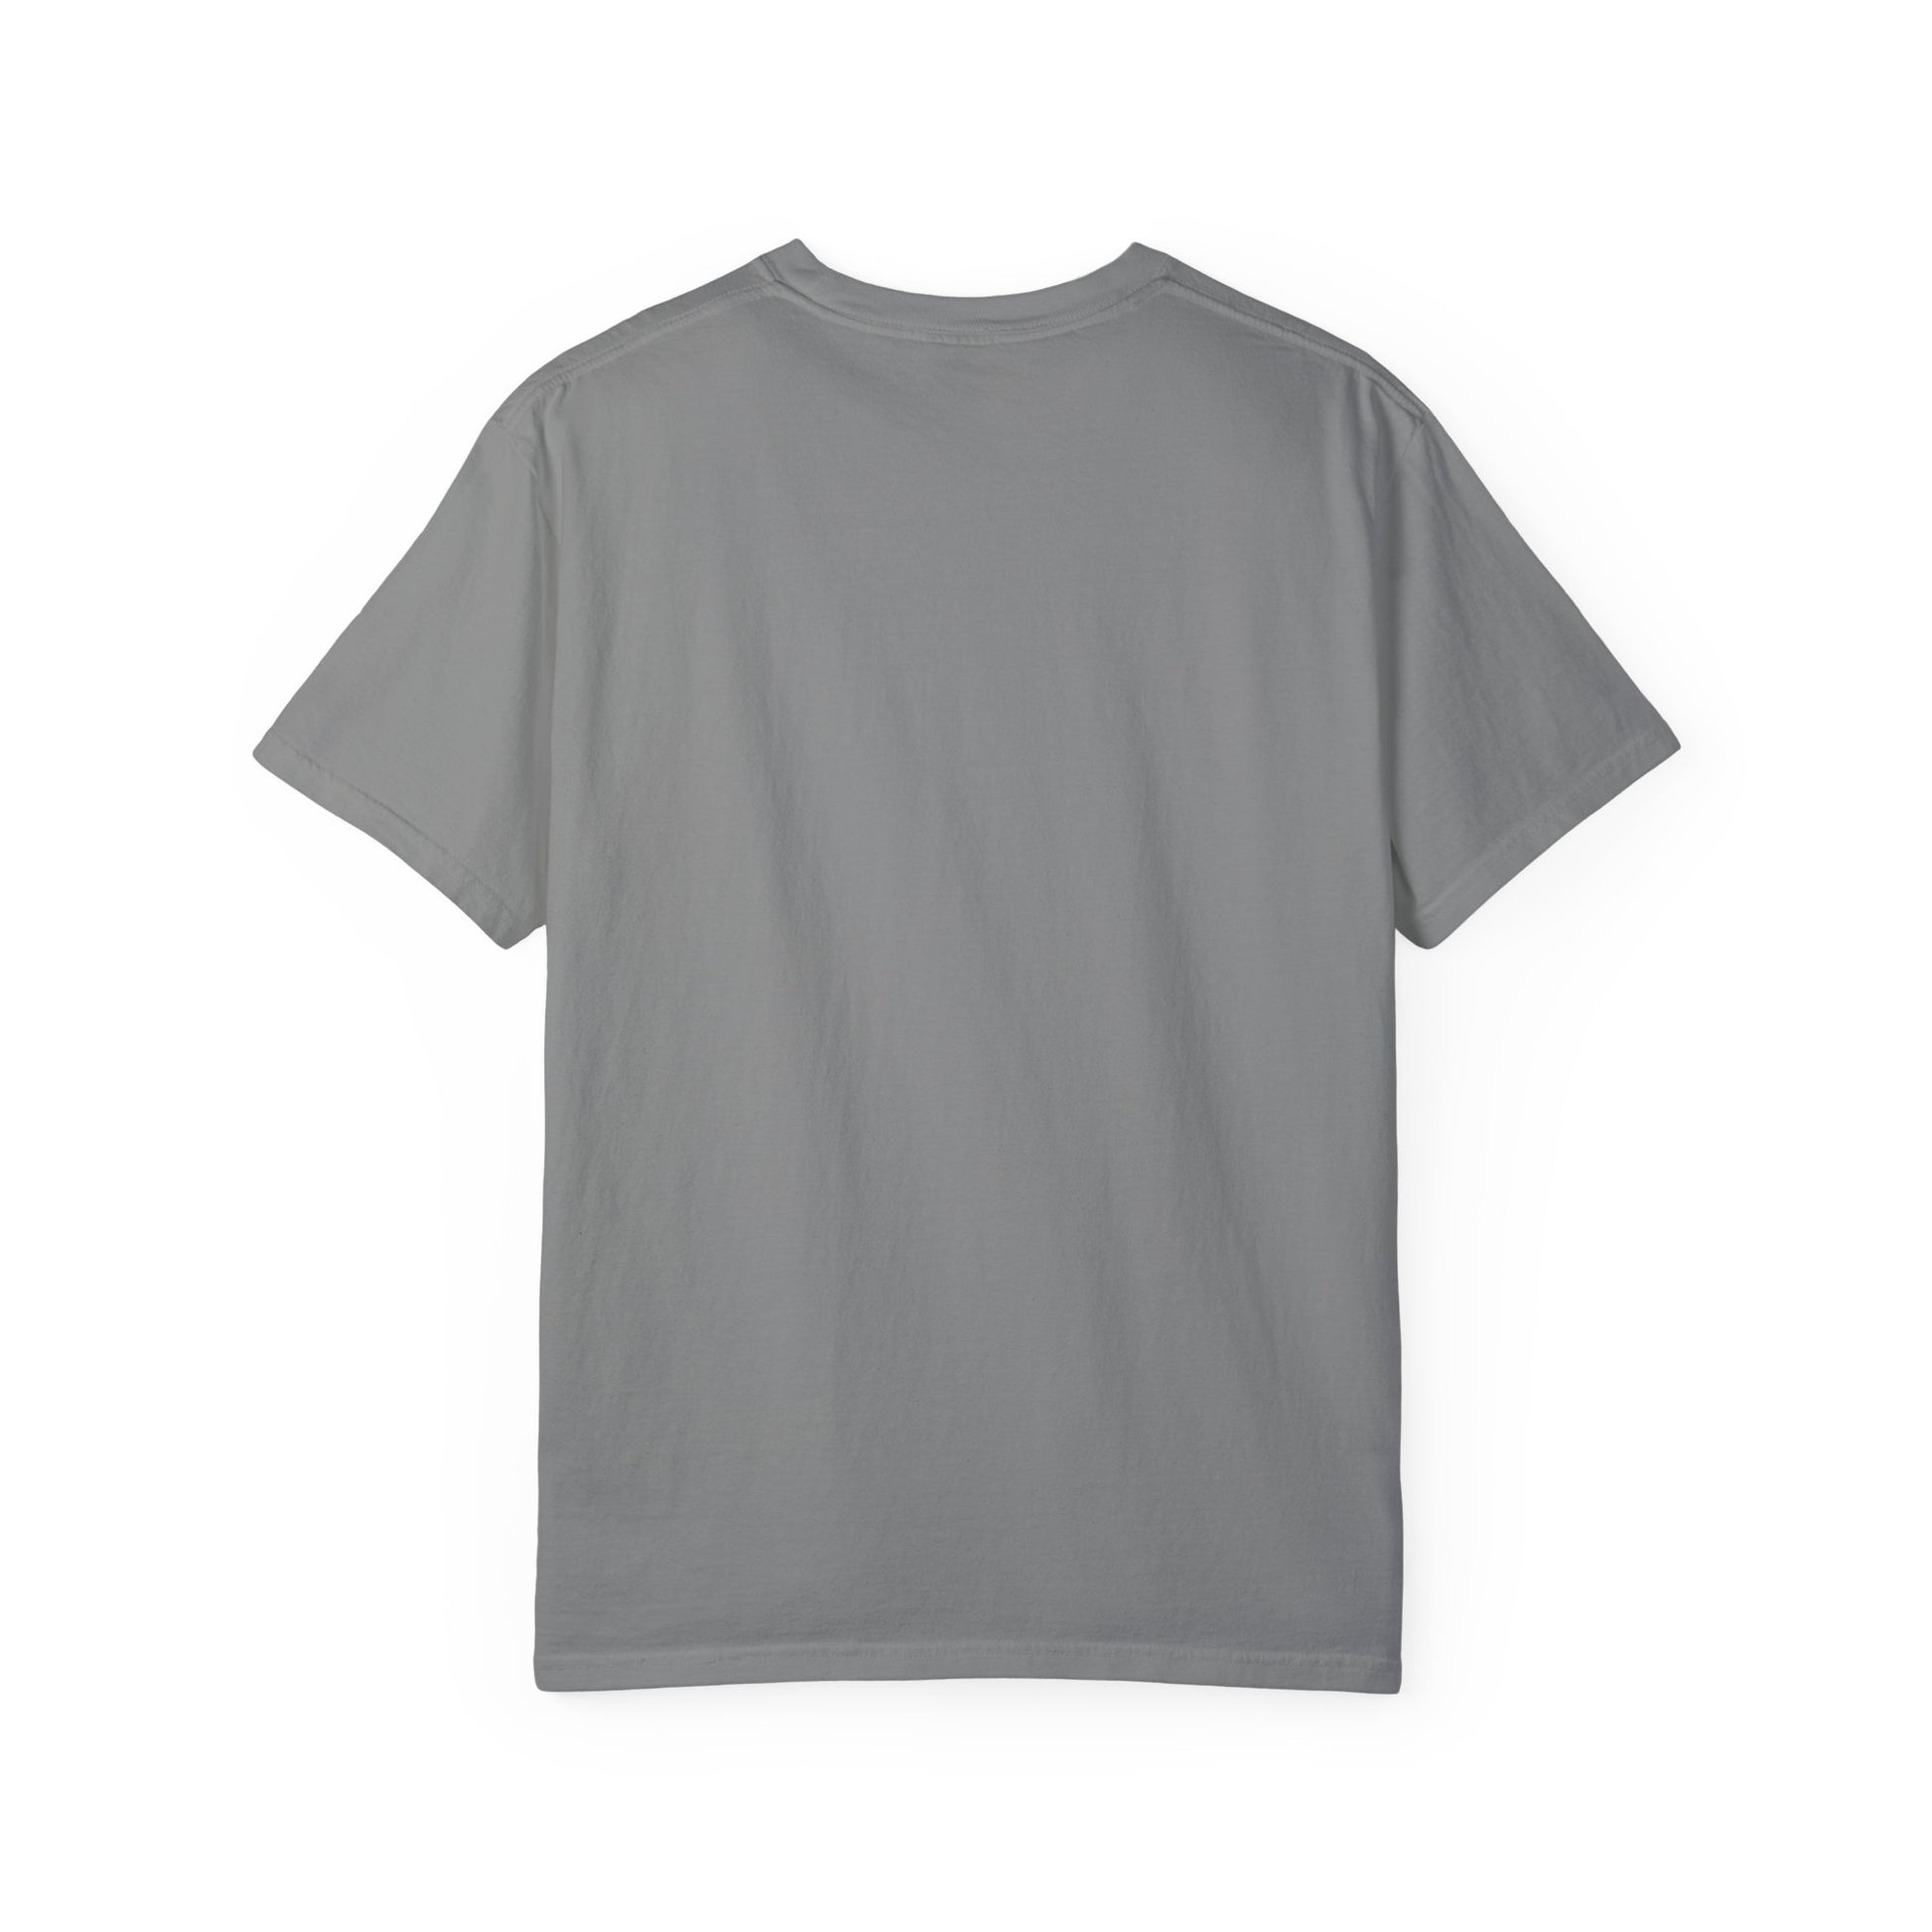 Proud of Grandma 2024 Graduate Unisex Garment-dyed T-shirt Cotton Funny Humorous Graphic Soft Premium Unisex Men Women Granite T-shirt Birthday Gift-25